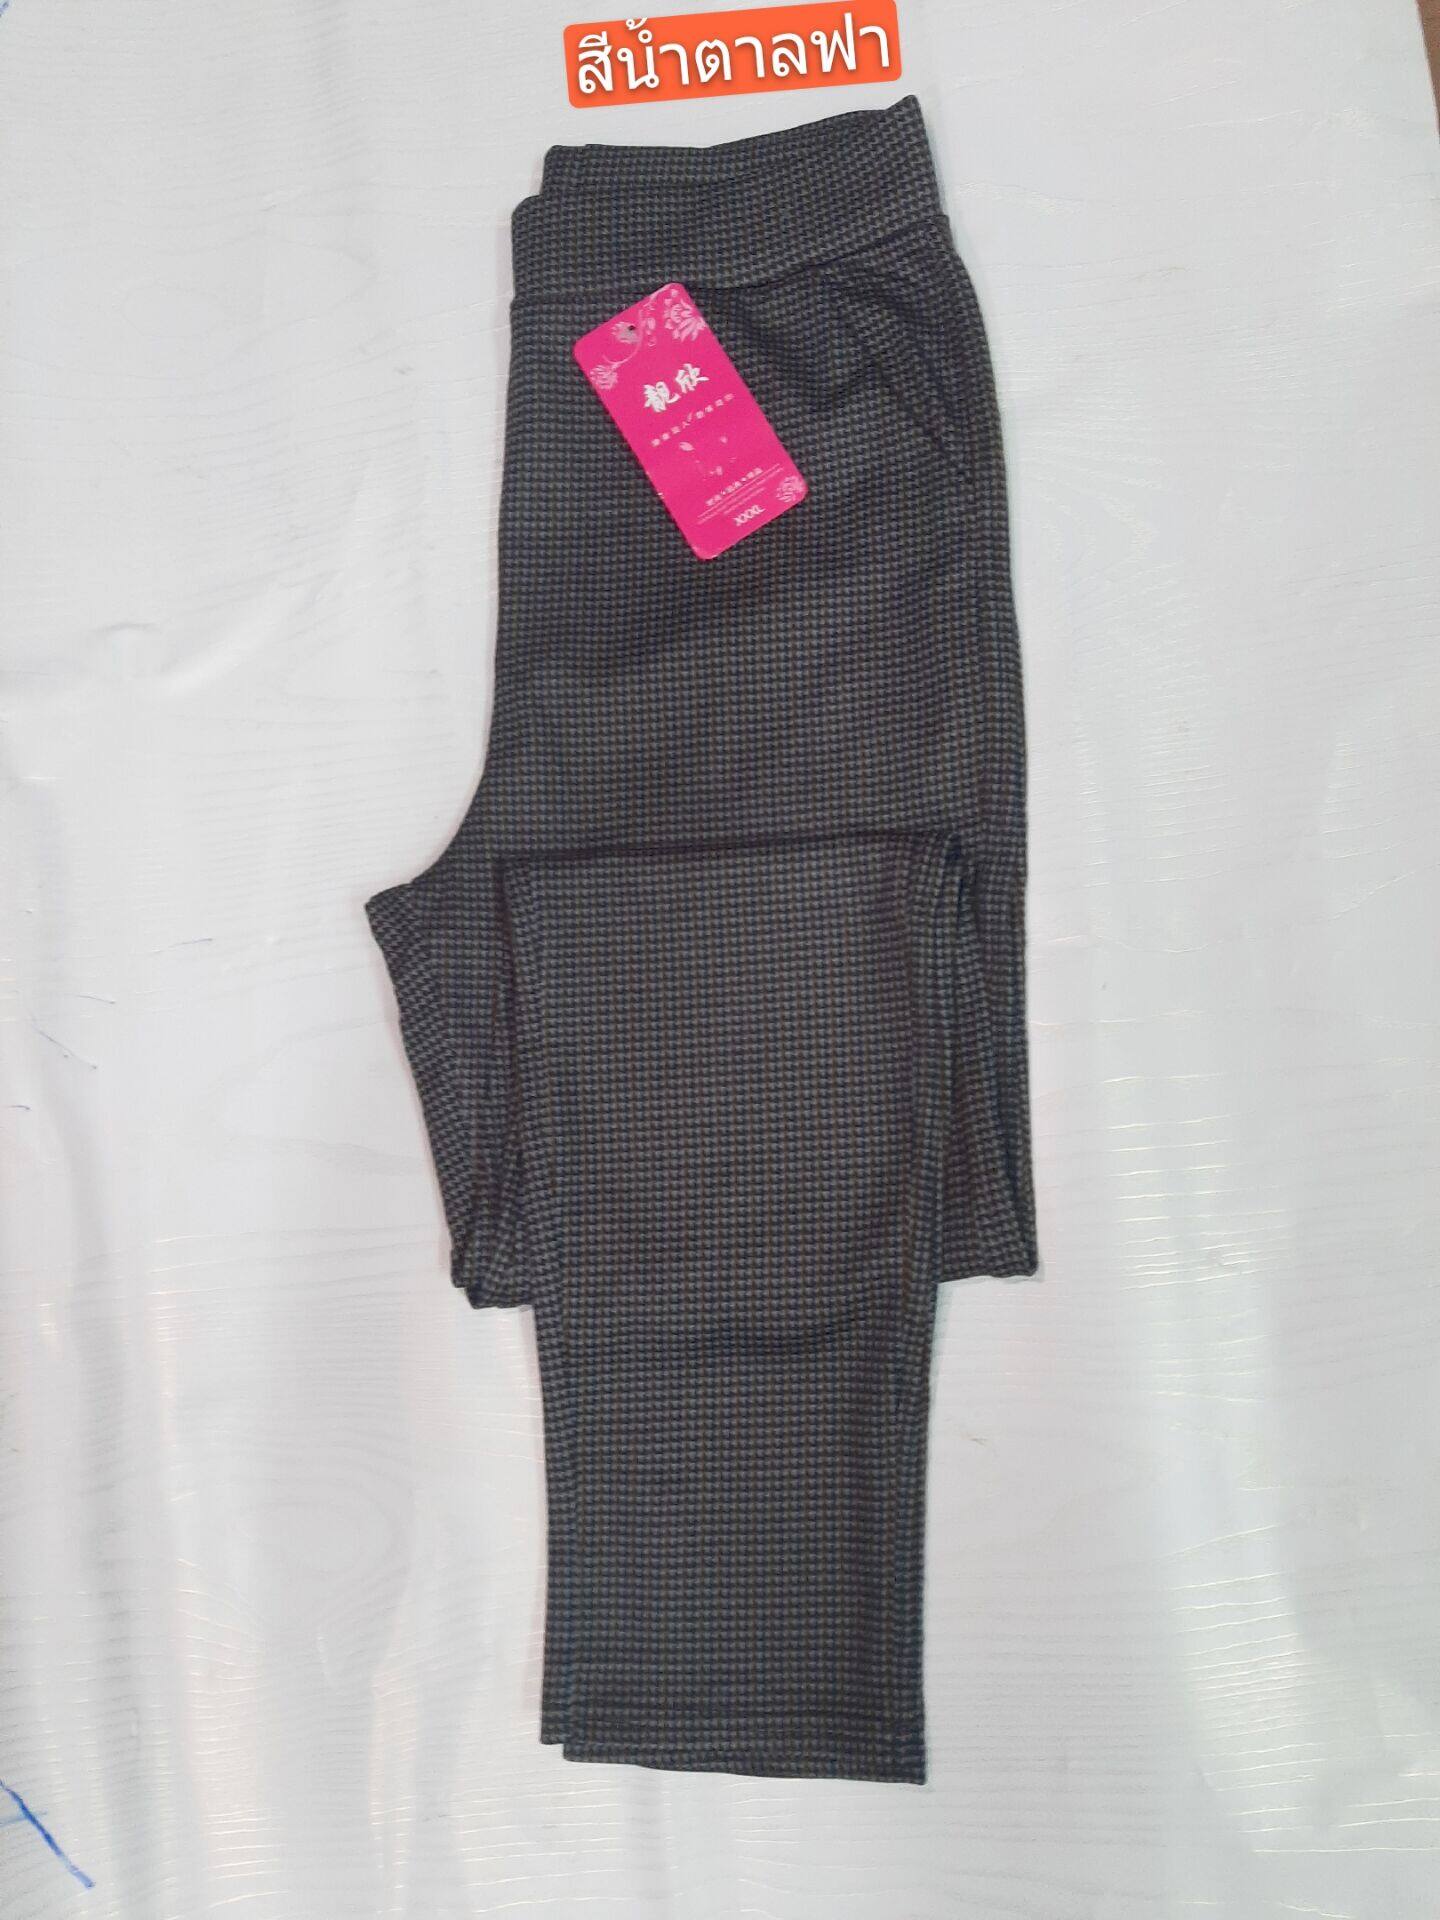 กางเกงขายาวผ้าเกาหลี(รับประกันใหญ่ยาว) สินค้าใหม่ล่าสุดใส่สบาย มี5ไชล์3XL 4XL 5XL 6XL 7XL